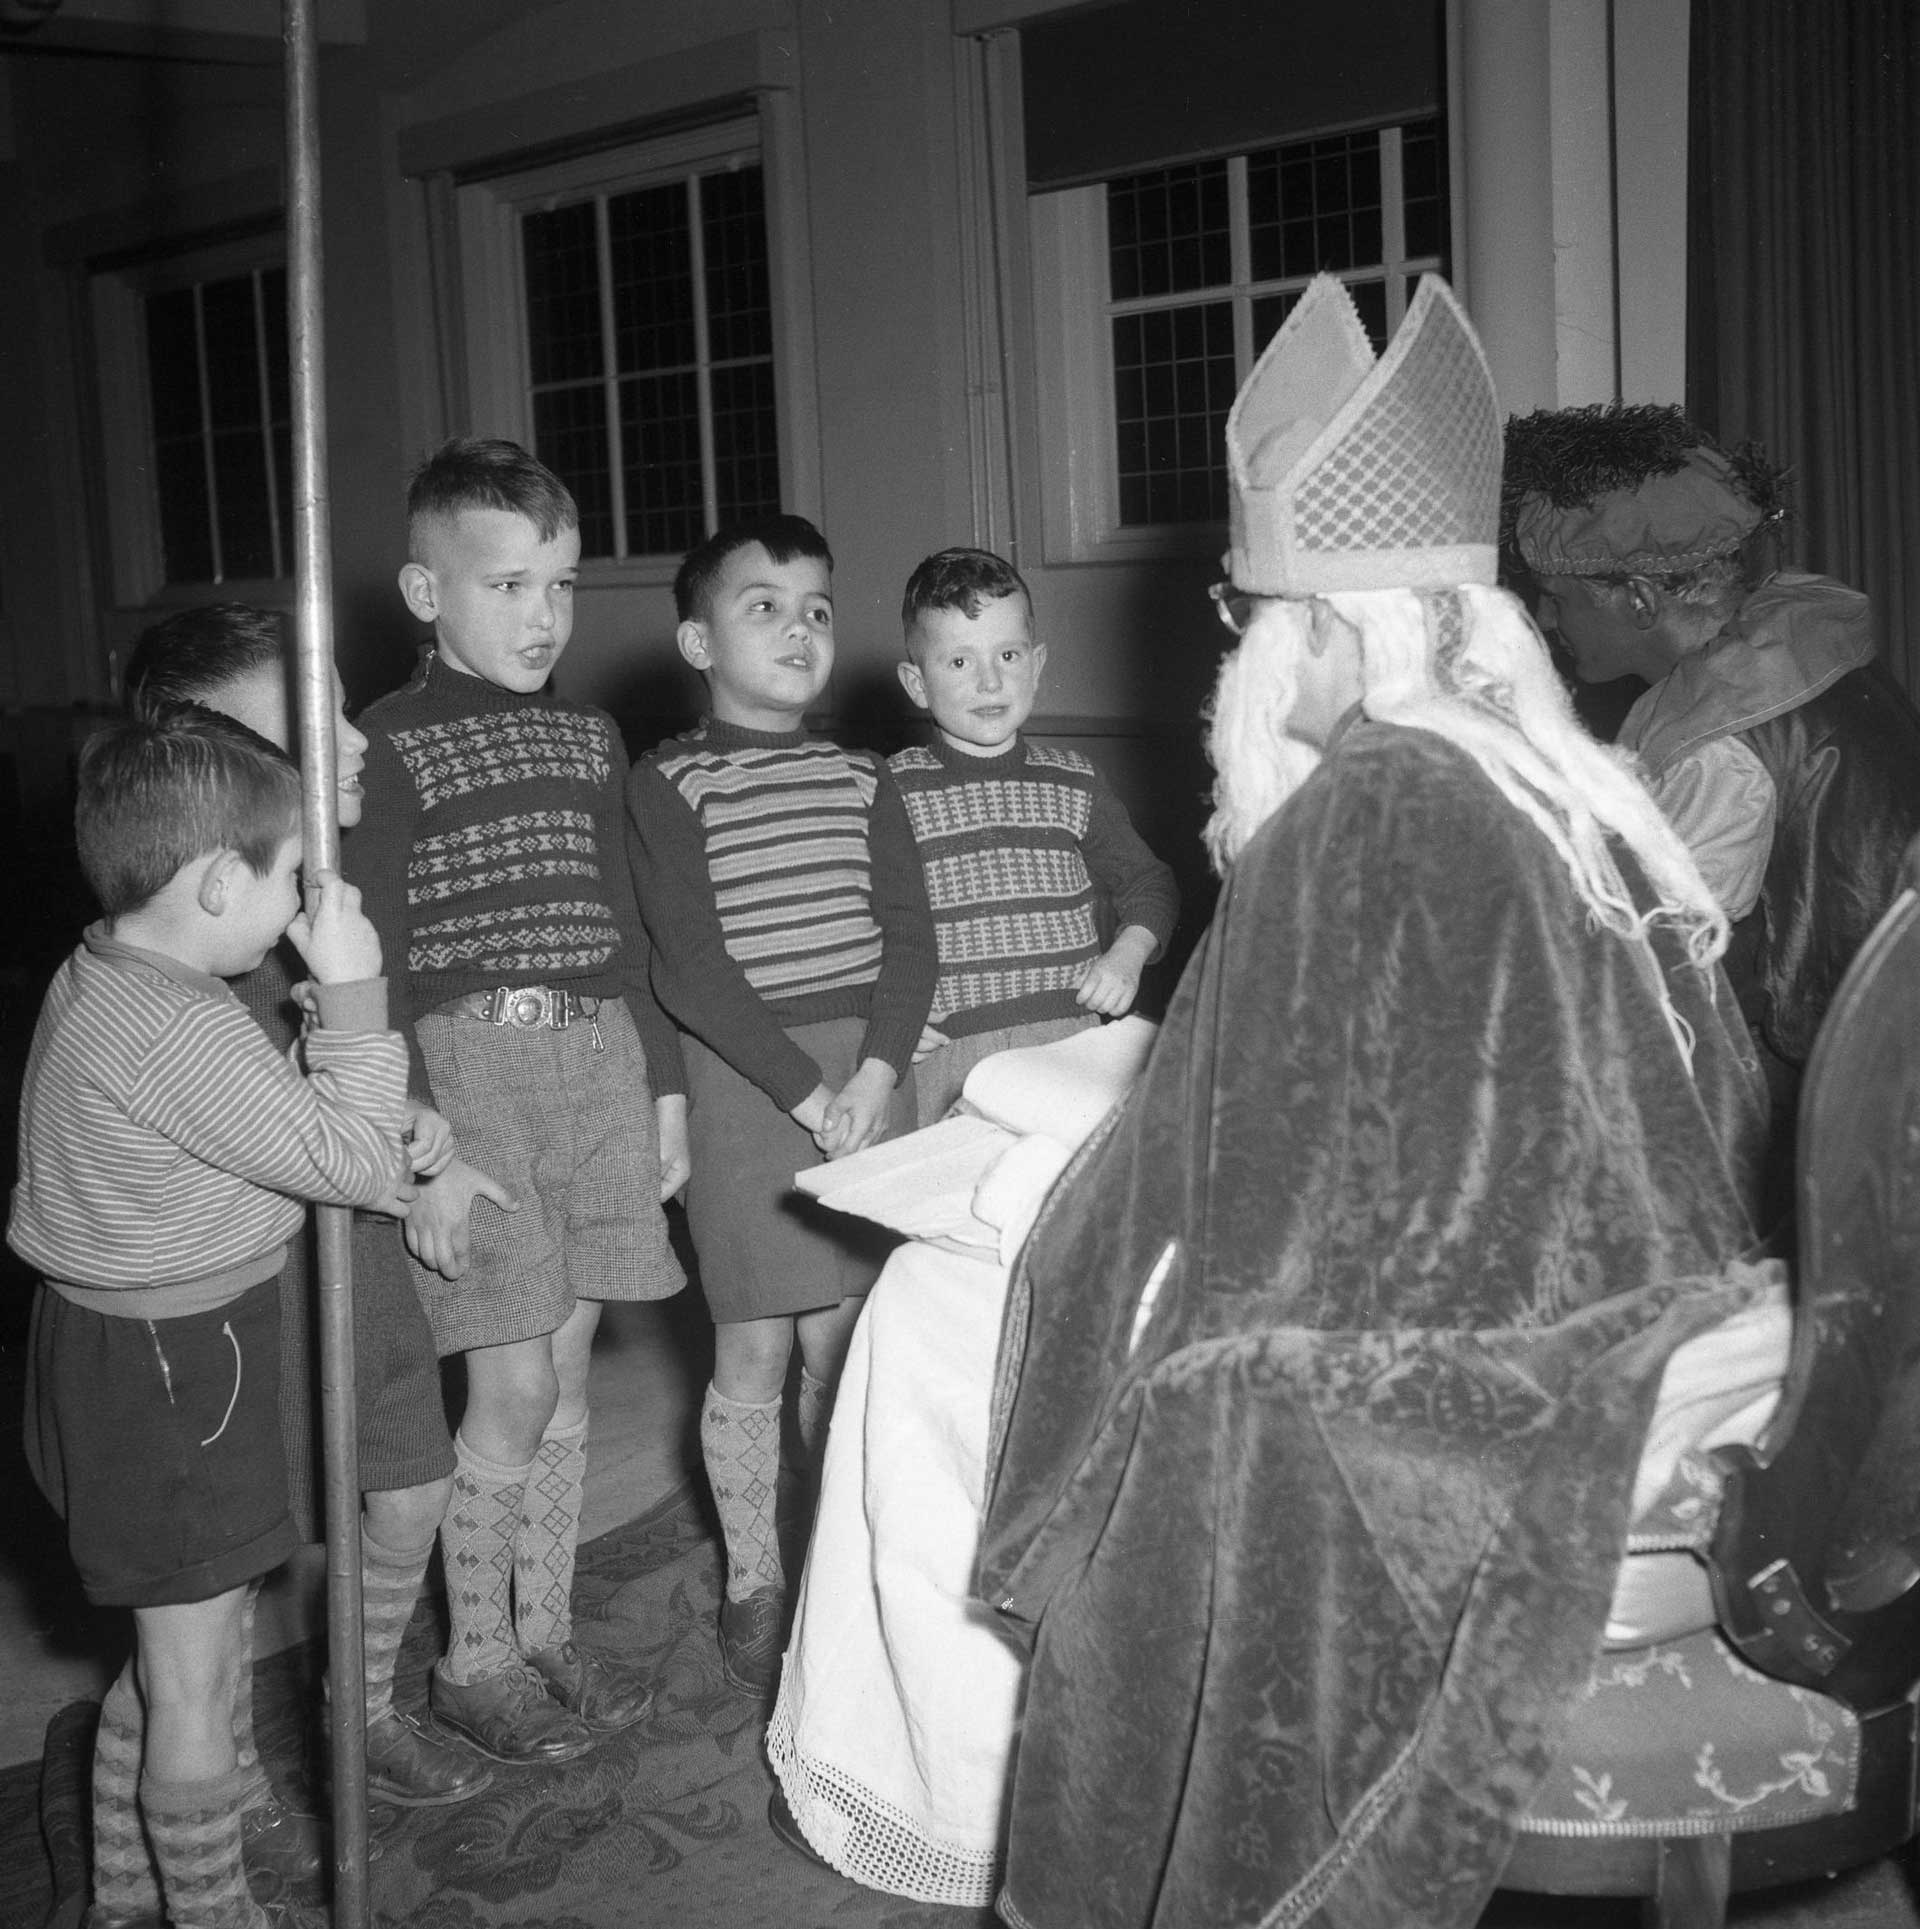 Bezoek van Sint Nicolaas aan het kindertehuis (foto: Fotopersbureau Het Zuiden. Bron: BHIC fotonummer 1672-004118)